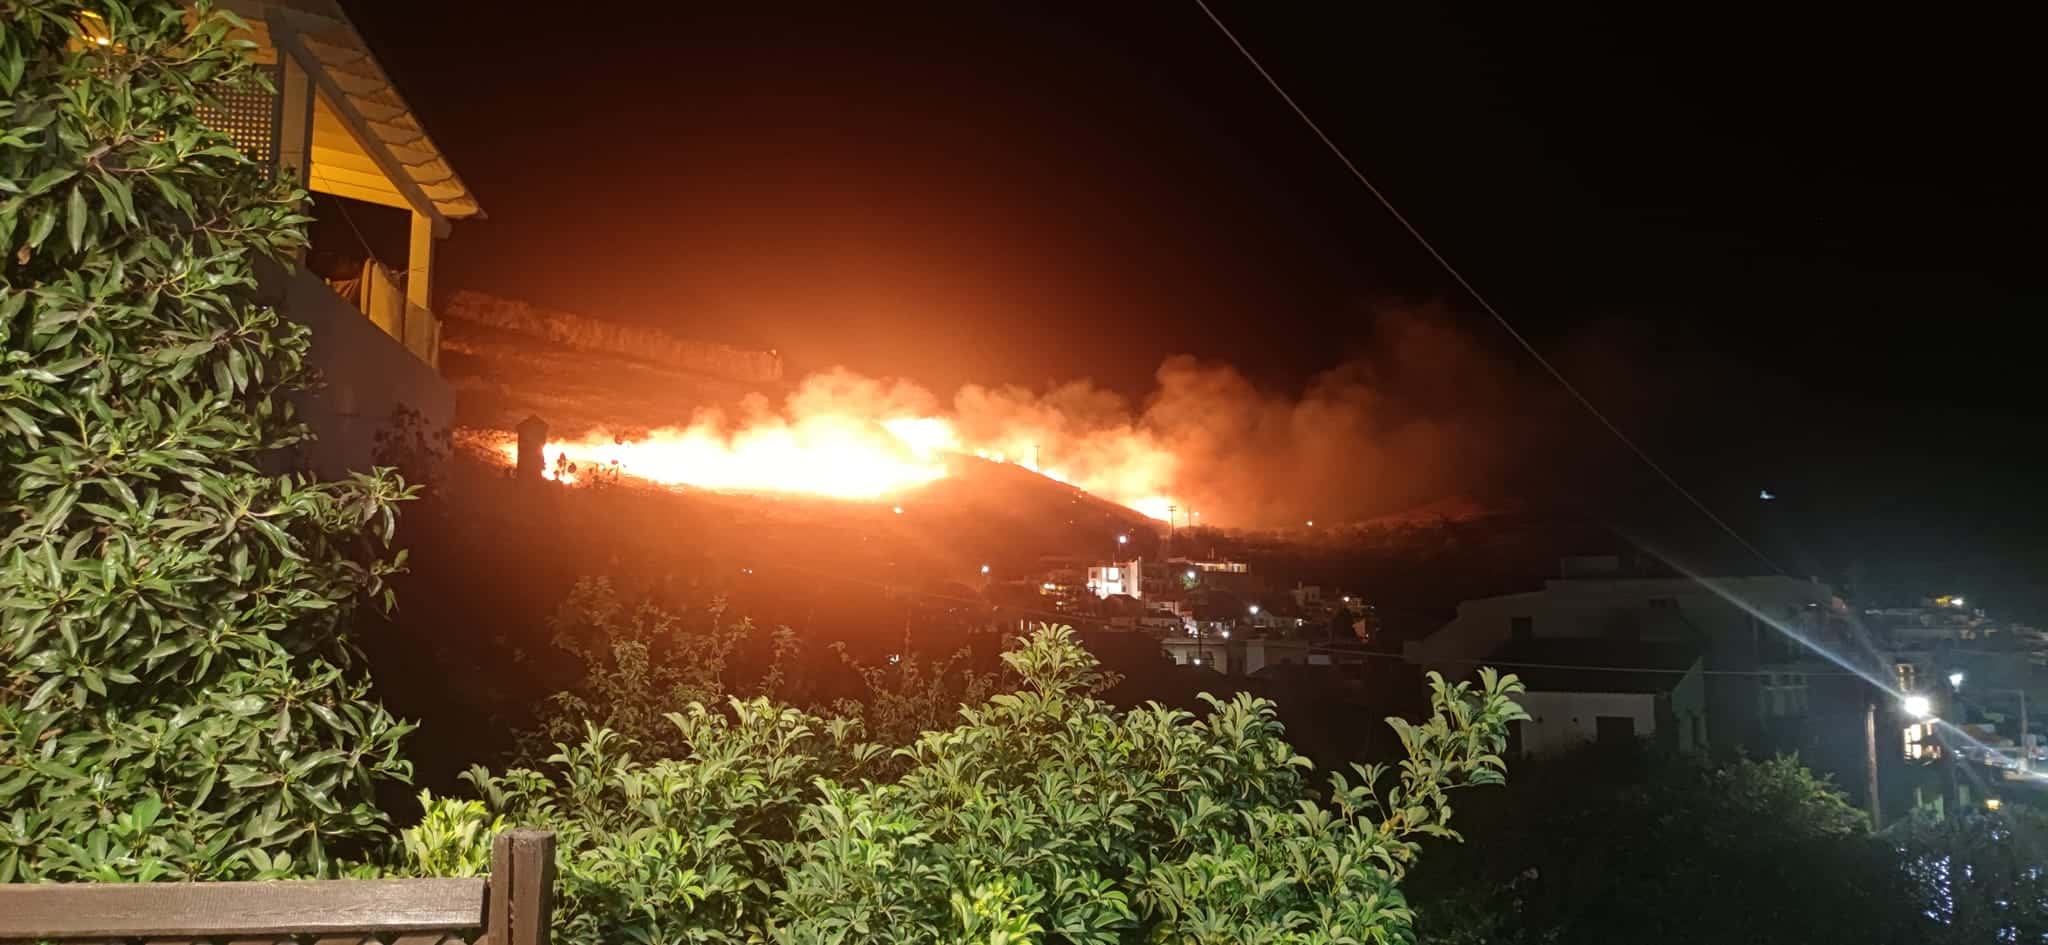 Φωτιά τώρα κοντά σε σπίτια στη Τζια (photos)